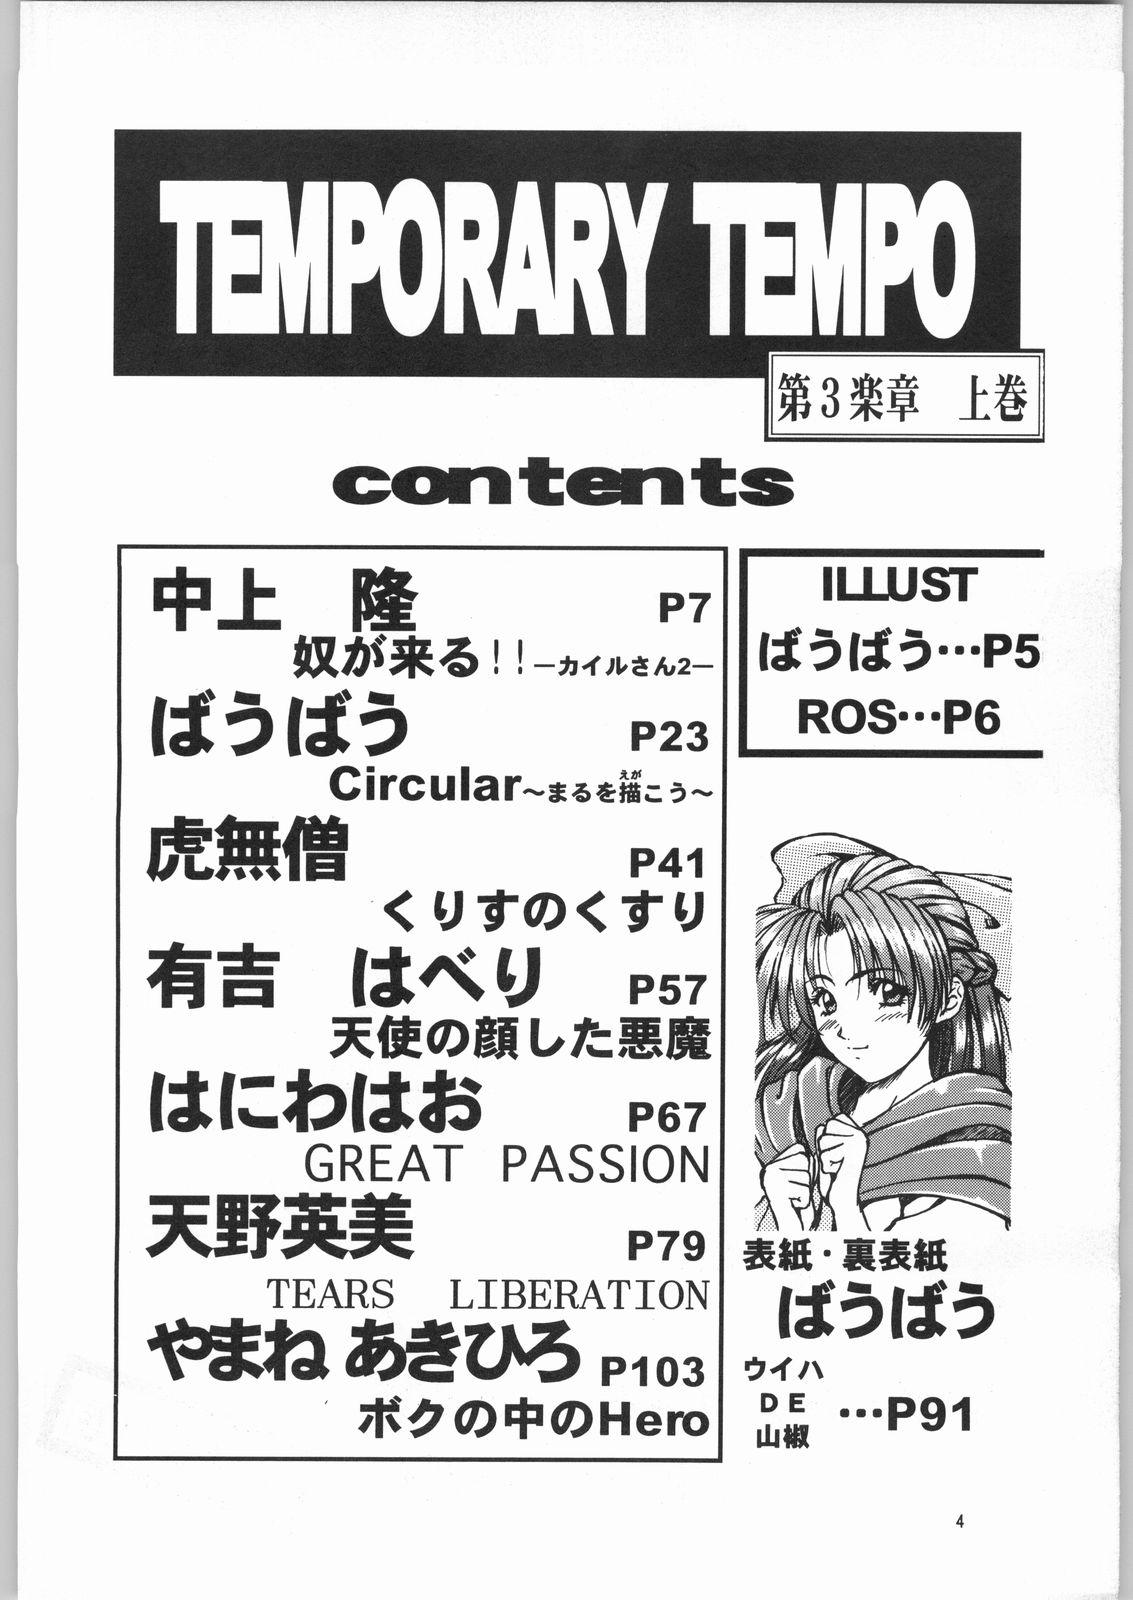 Temporary Tempo Dai 3 Gakushou 2